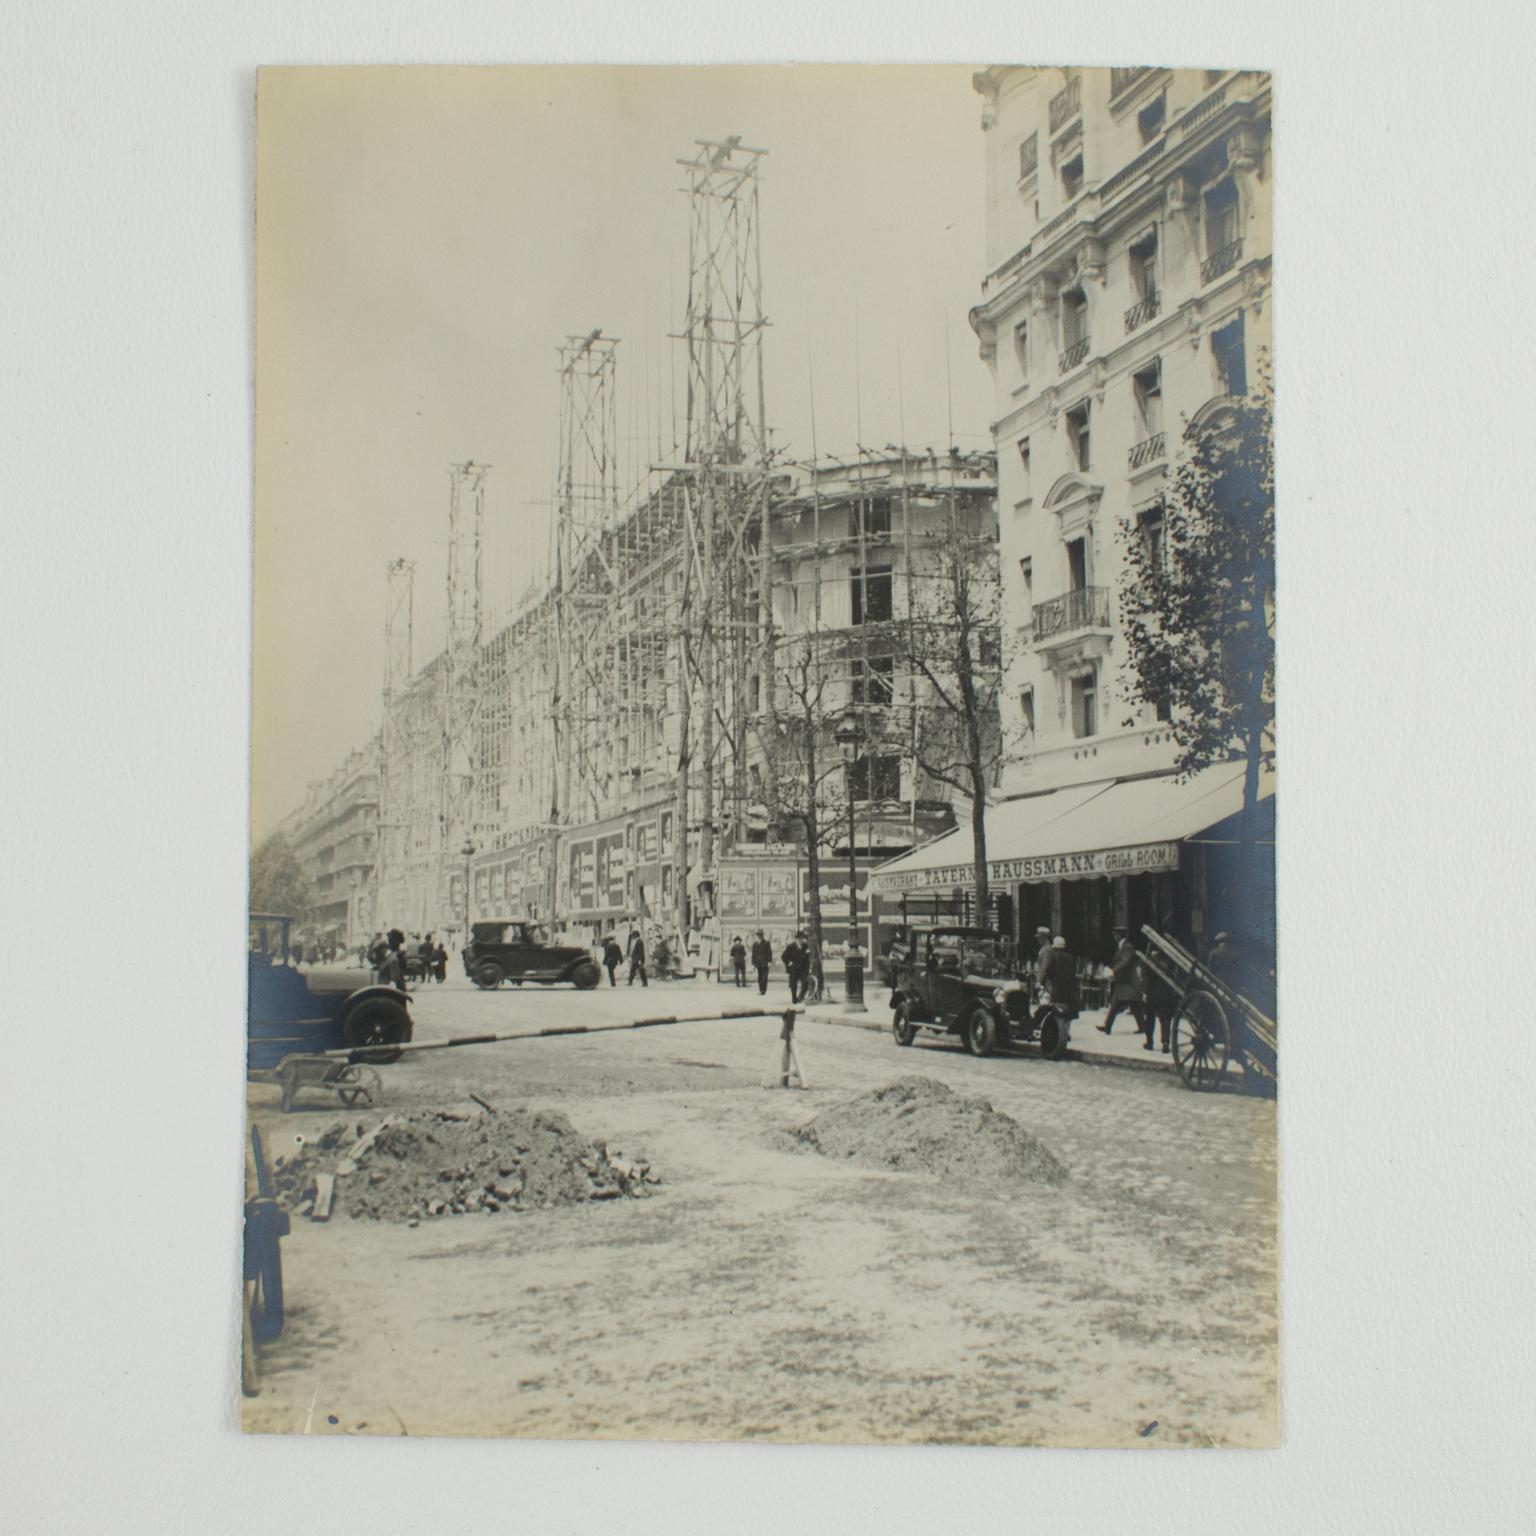 Boulevard Haussmann Konstruktion, Paris 1926, Silber-Gelatine-B und W-Fotografie (Art déco), Photograph, von Press Photo